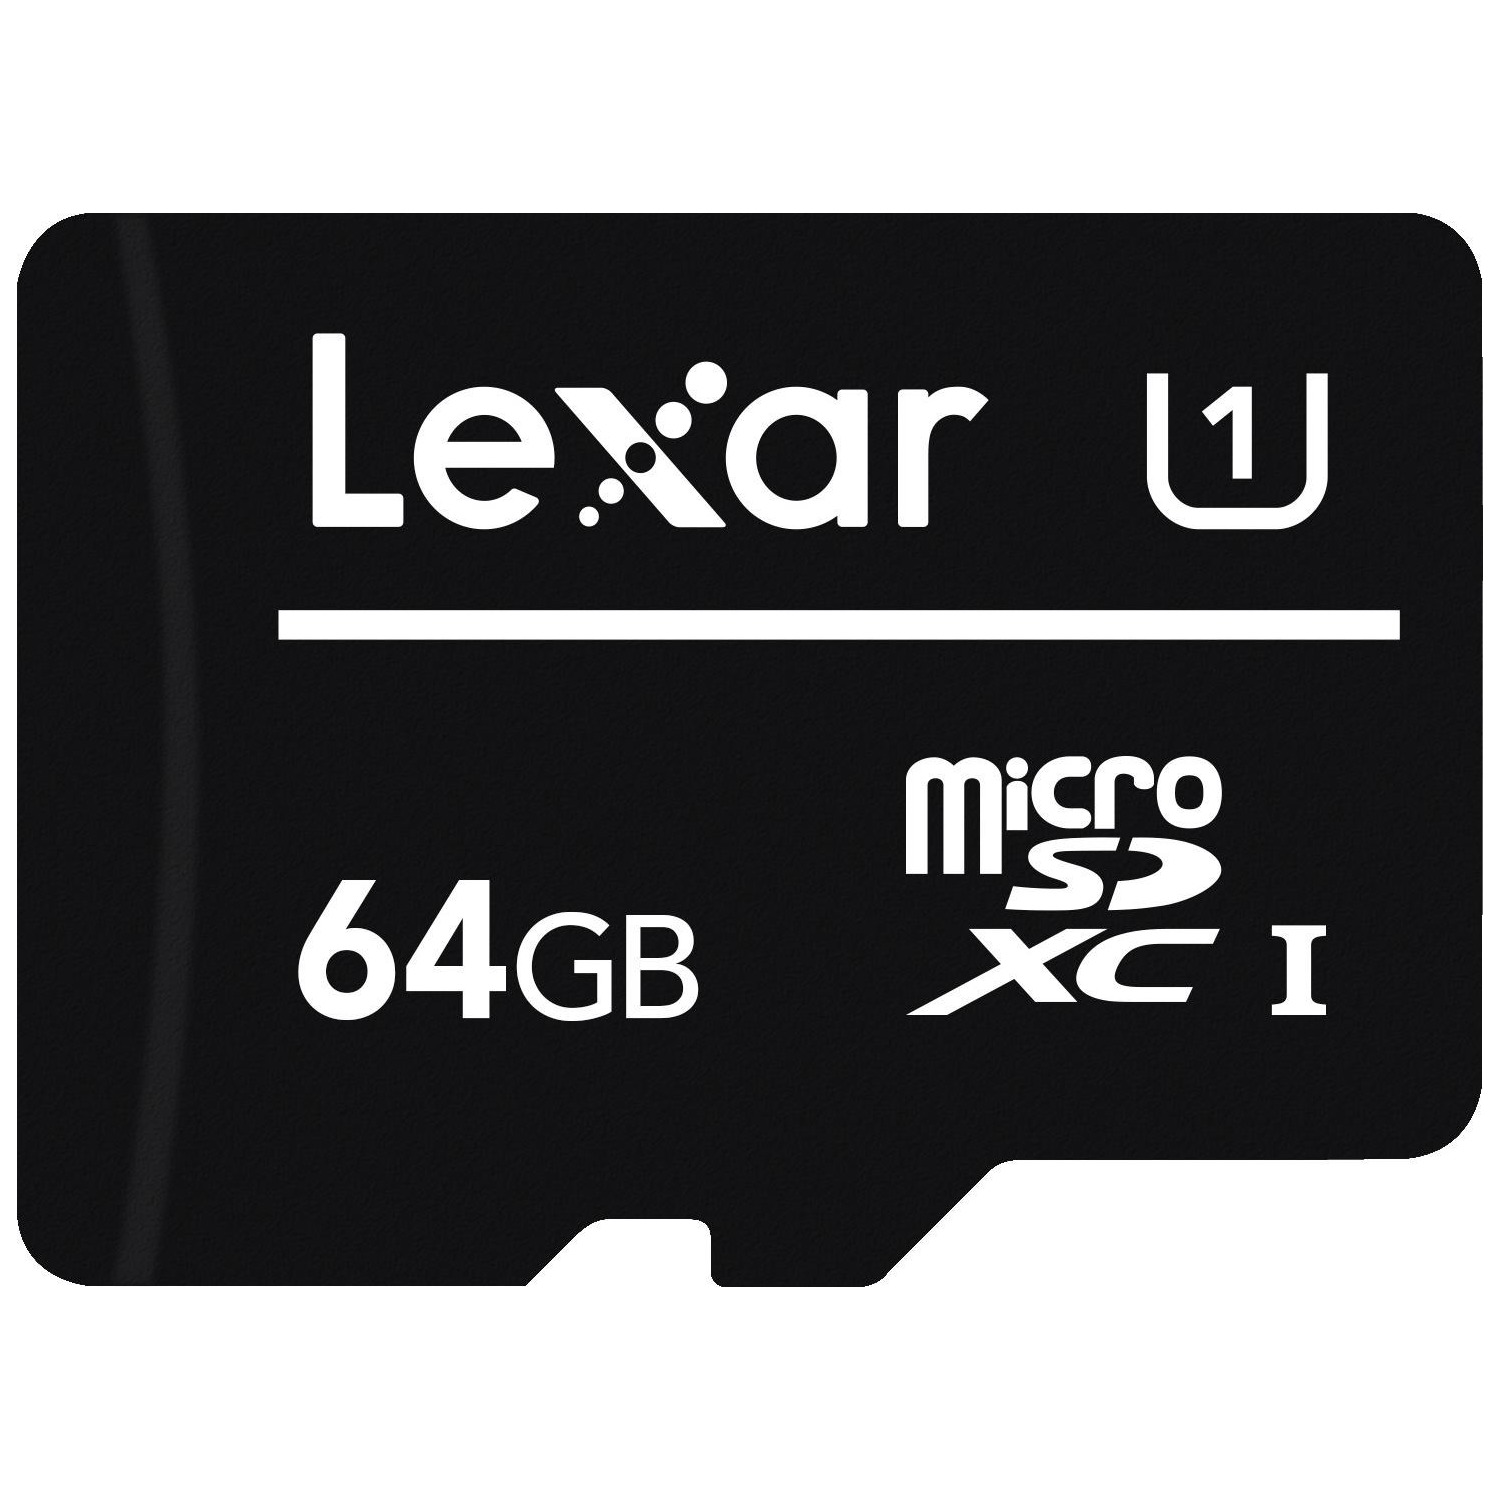 Immagine per MicroSD Lexar 64GB classe 10 senza adattatore da DIMOStore